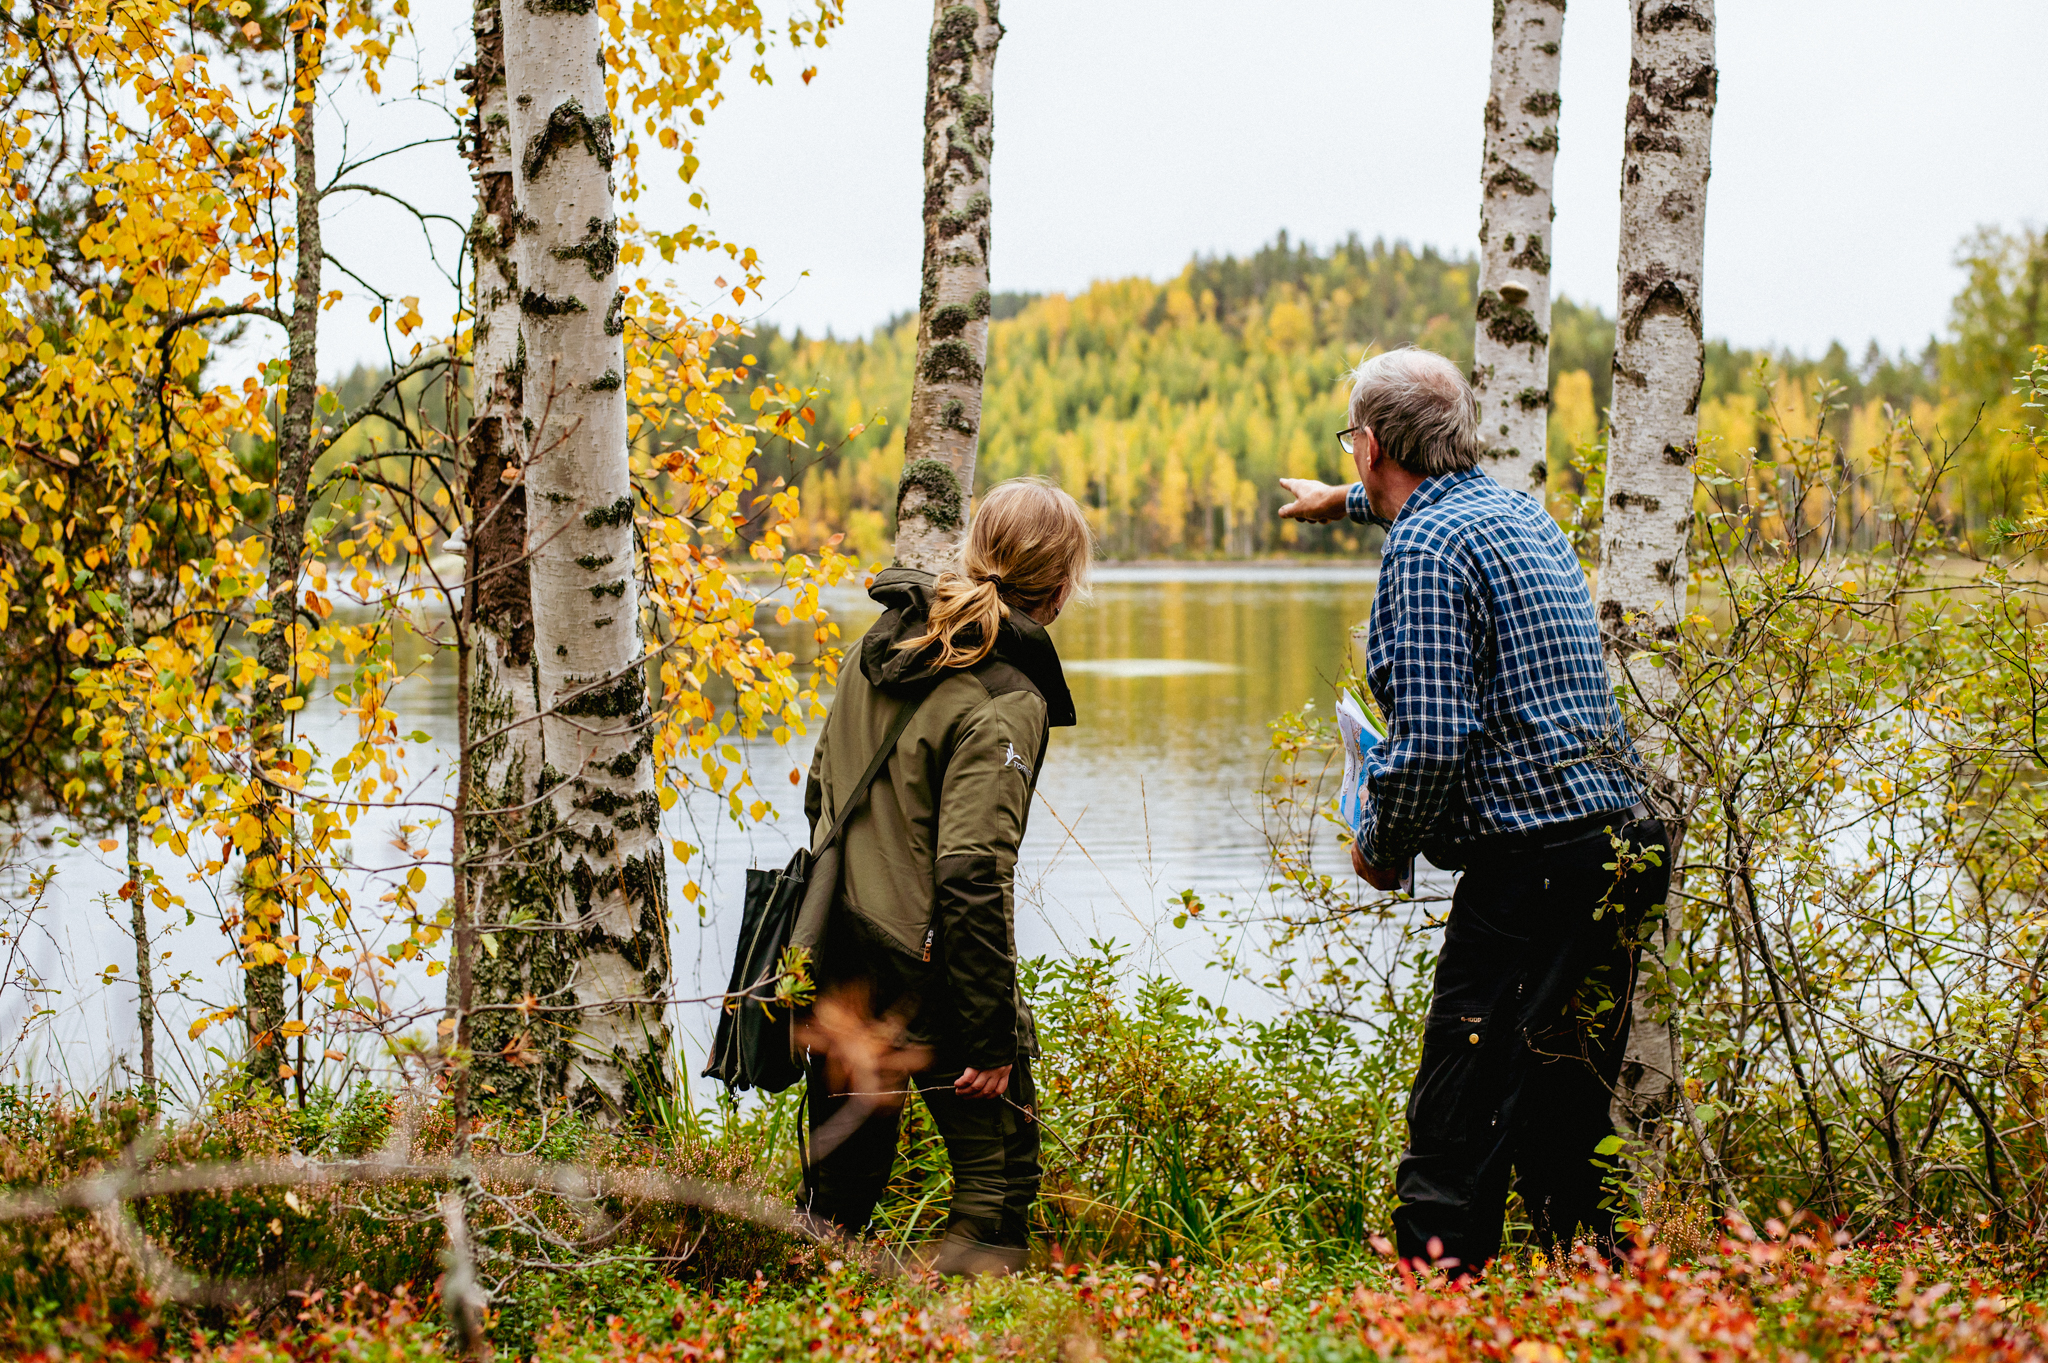 Mies ja nainen metsän reunalla järven rannalla, mies osoittaa vastarannan metsää.